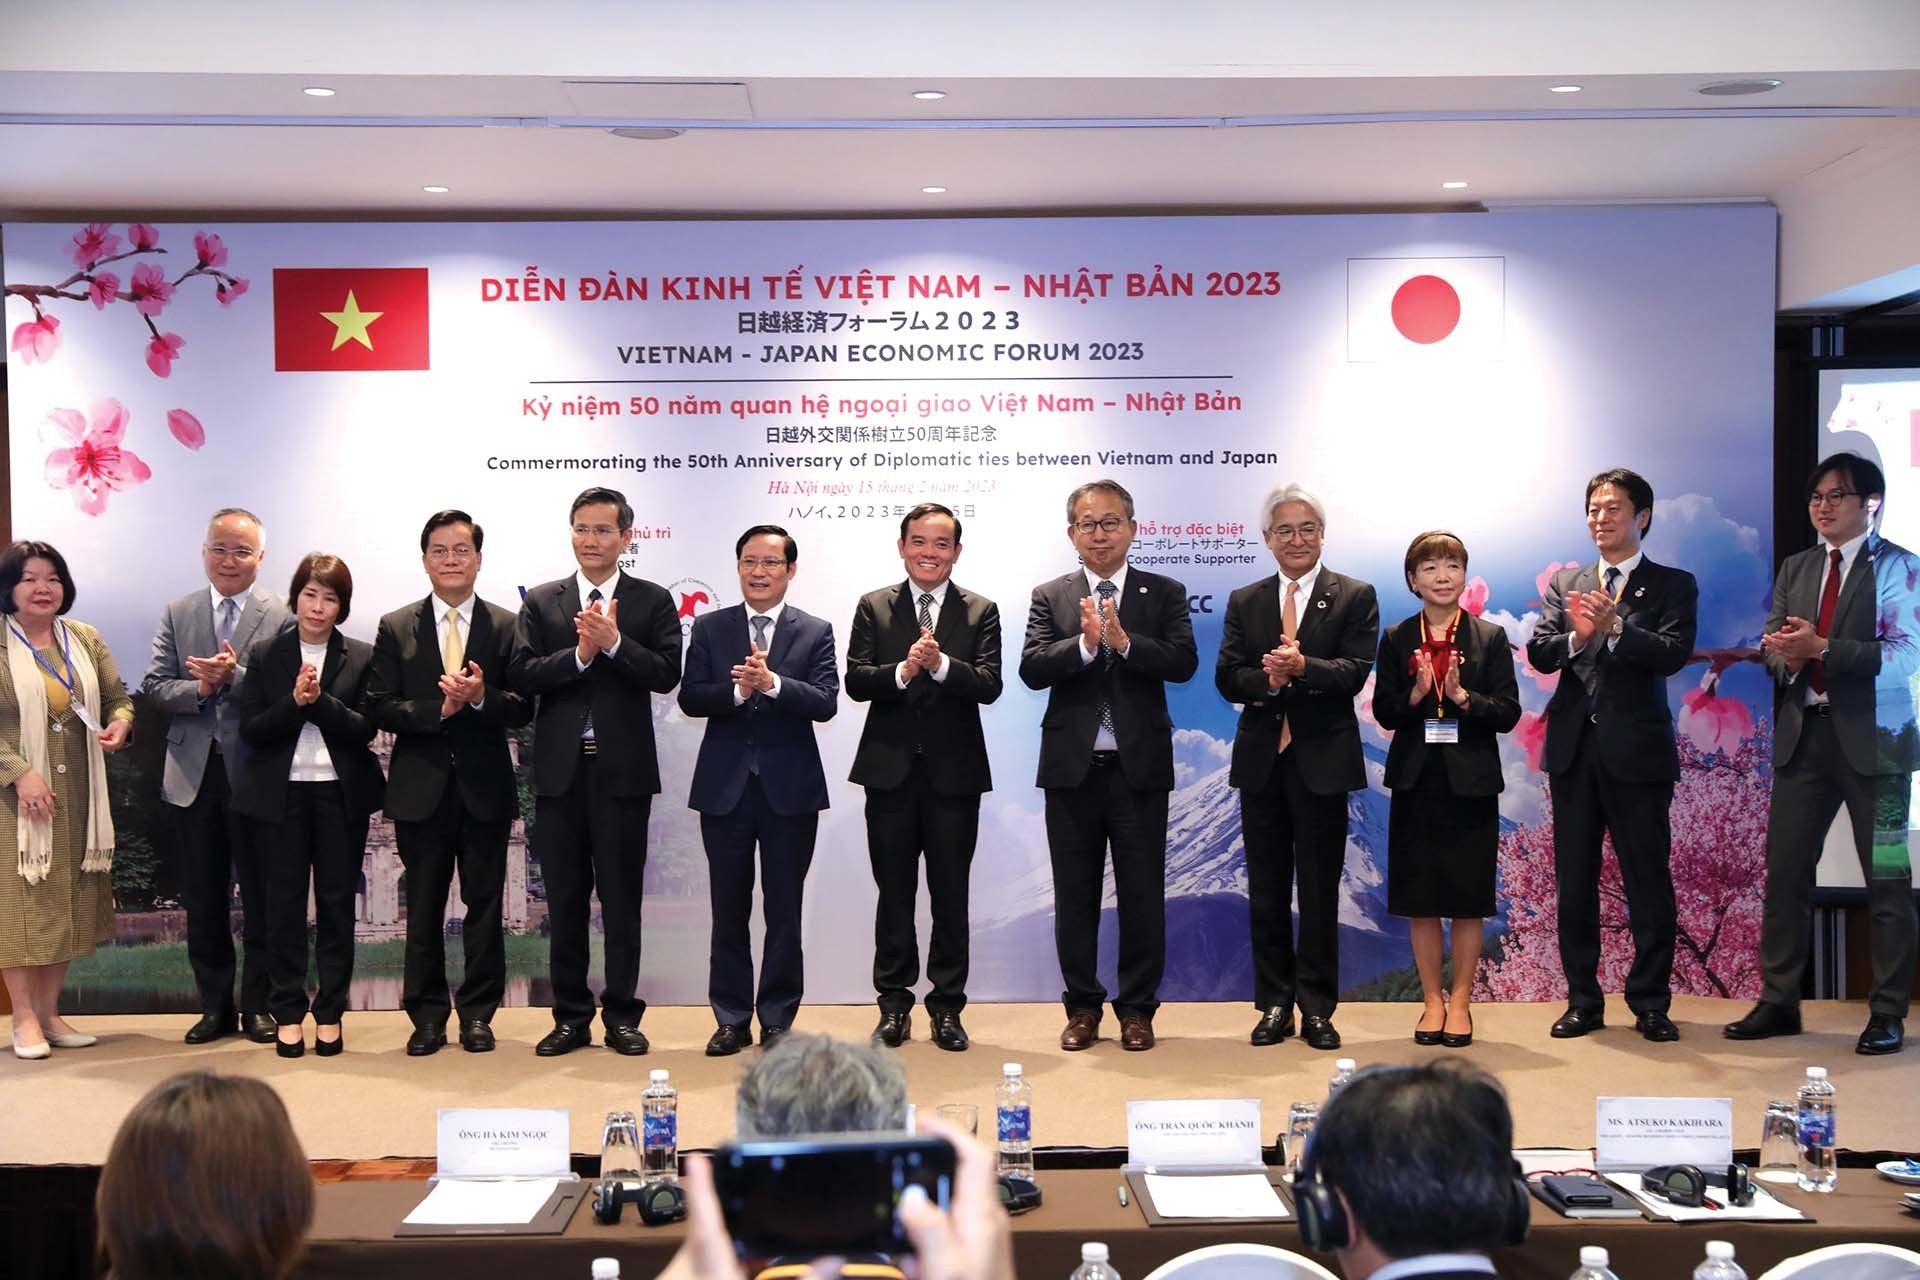 Phó Thủ tướng Trần Lưu Quang cùng lãnh đạo các bộ, ban, ngành Việt Nam và các đại biểu Nhật Bản tham dự “Diễn đàn kinh tế  Việt Nam - Nhật Bản 2023: Cùng kiến tạo đổi mới nhằm xây dựng nền kinh tế phát triển bền vững” tại Hà Nội, ngày 15/2/2023.